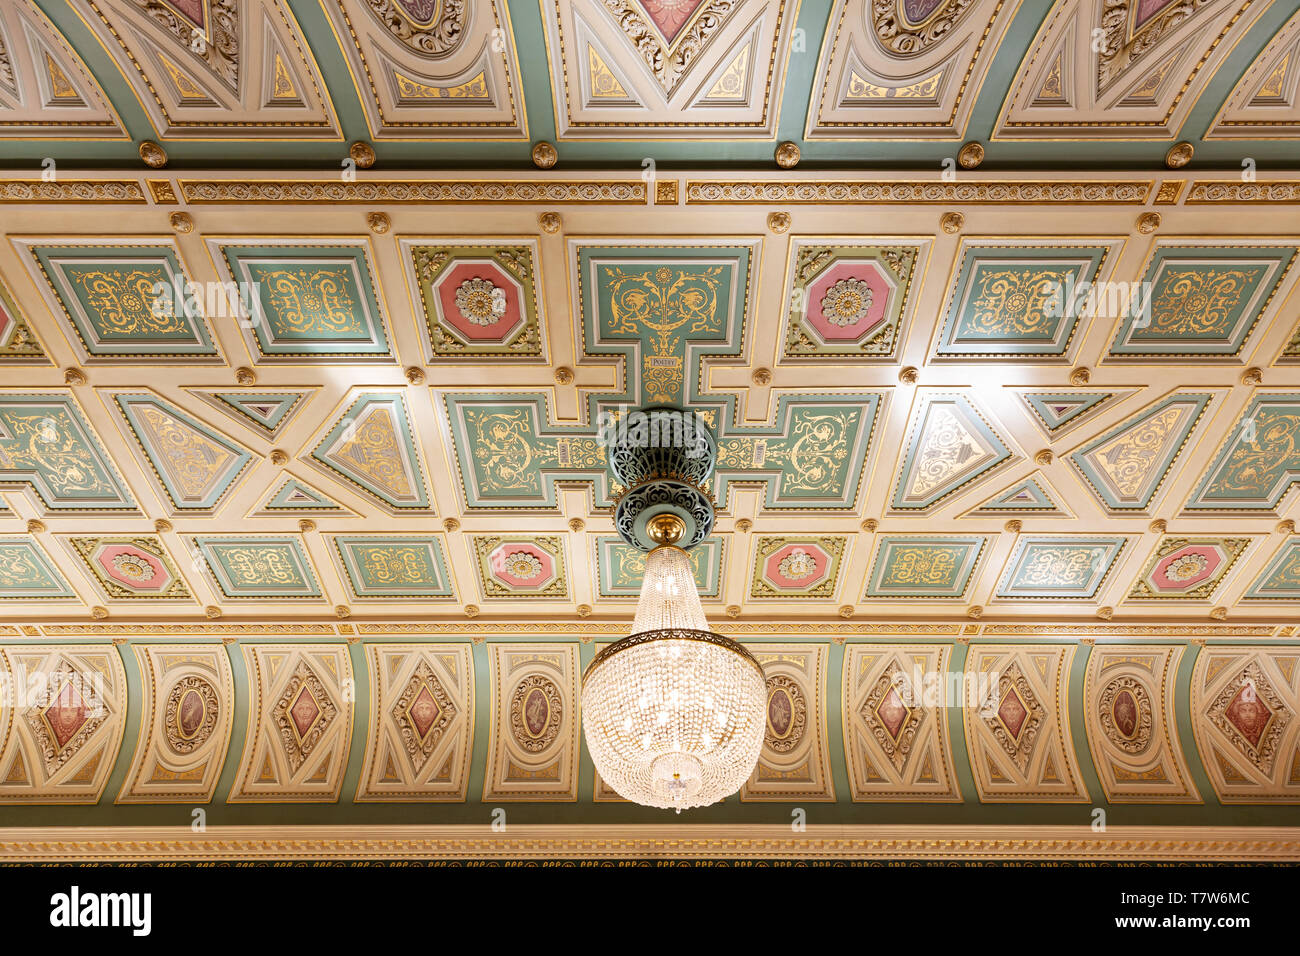 Le plafond de l'intérieur de la Guildhall, un bâtiment du 18ème siècle en style Reine Anne ; Worcester Guildhall, Worcester, Worcestershire UK Banque D'Images